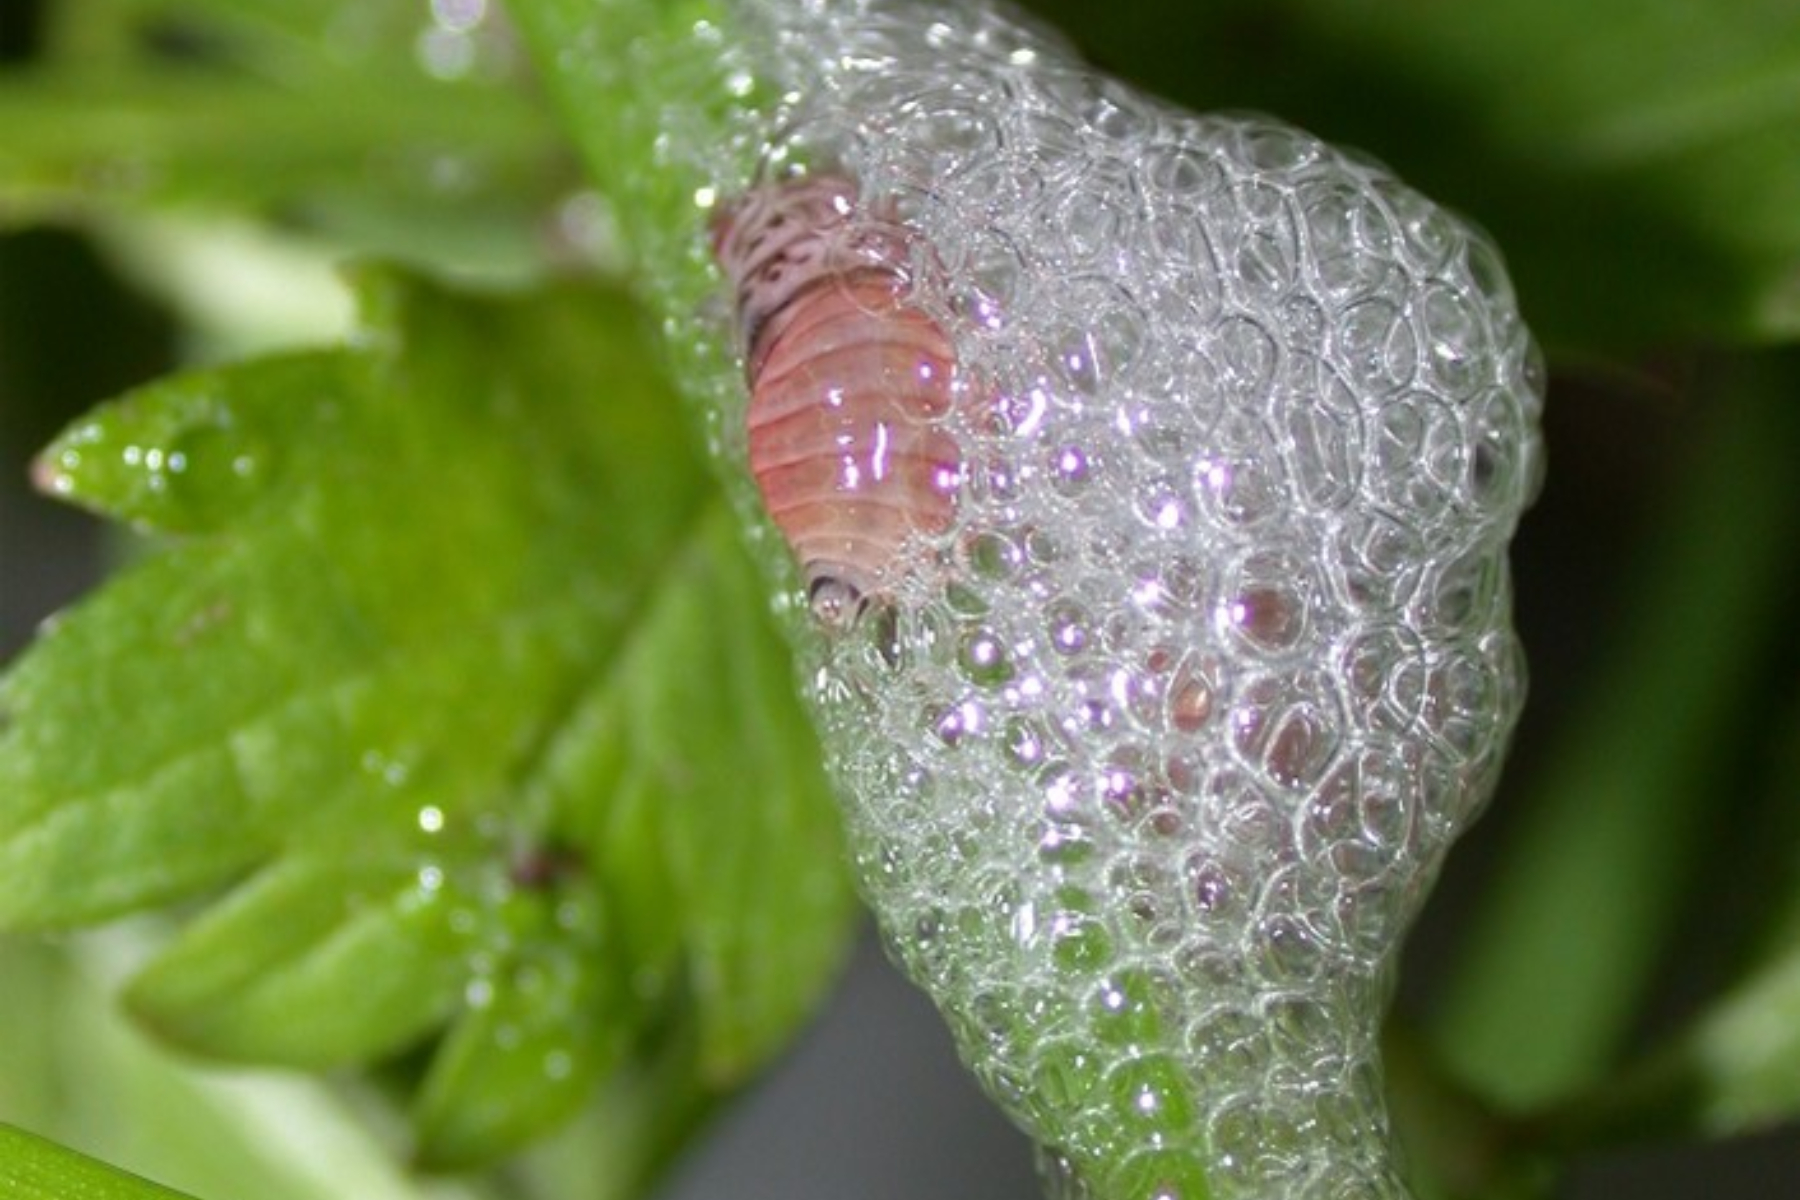 رغاوي لاصقة مفرزة من فتحة الشرج للحشرة قد تلهم منتجات جديدة للعناية بالبشرة